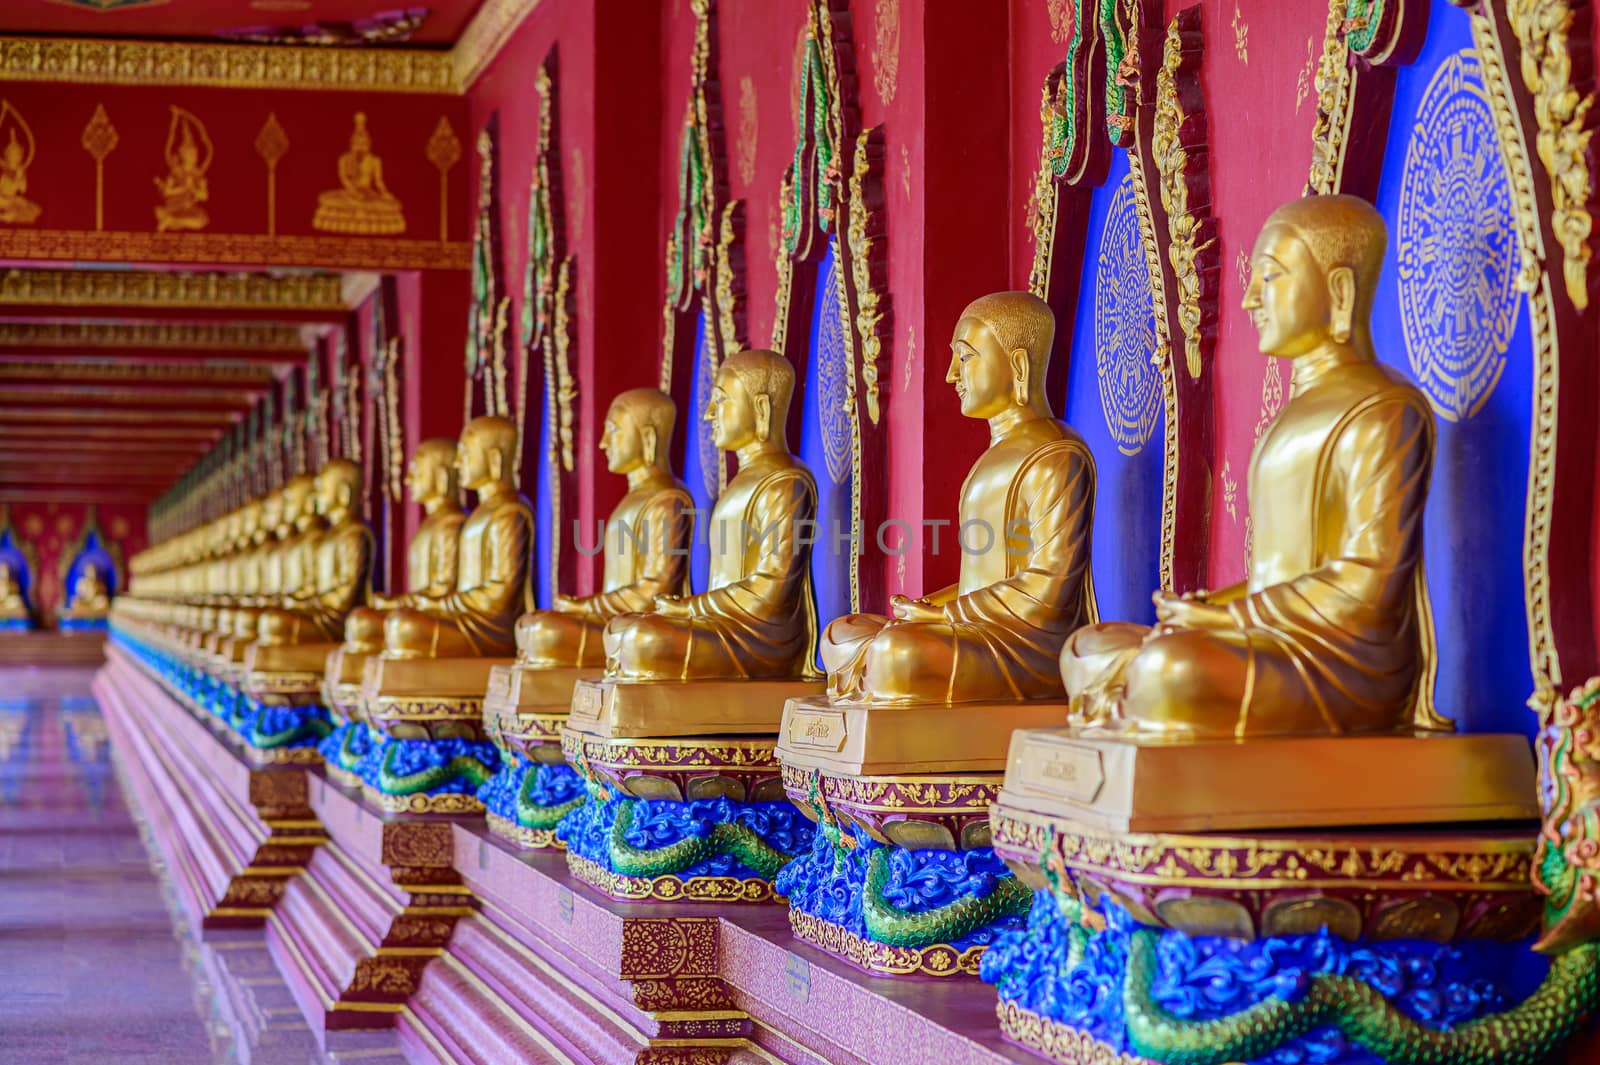 Buddha Wat Mahathat Wachiramongkol Wat Bang Thong In Krabi Province Thailand May 19, 2019 by sarayut_thaneerat